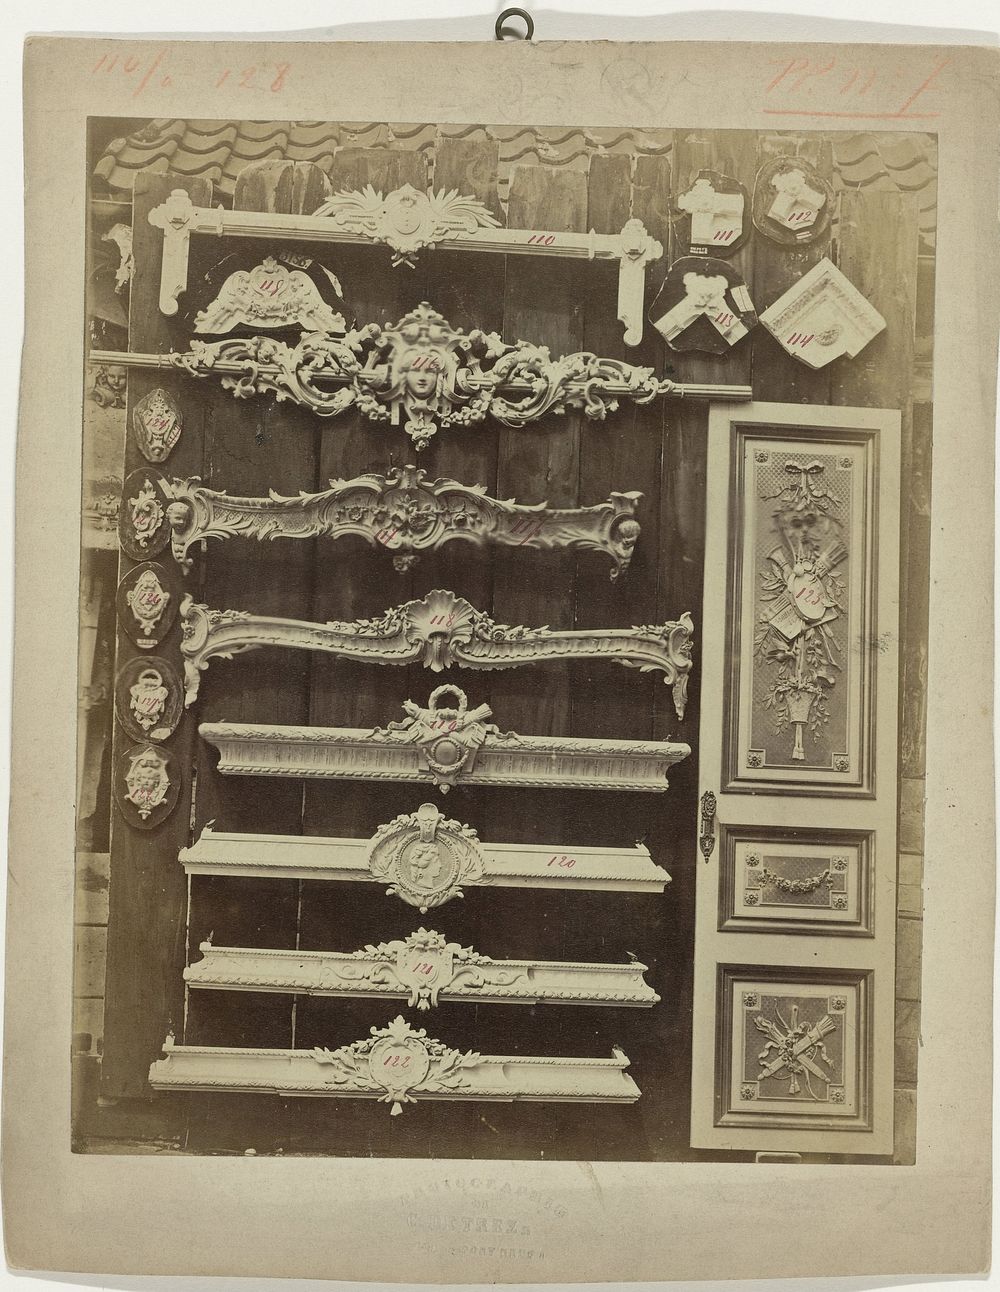 Compositie van gipsen ornamenten uit het atelier van J. Delbove, Brussel, België (1860 - 1882) by Charles De Trez